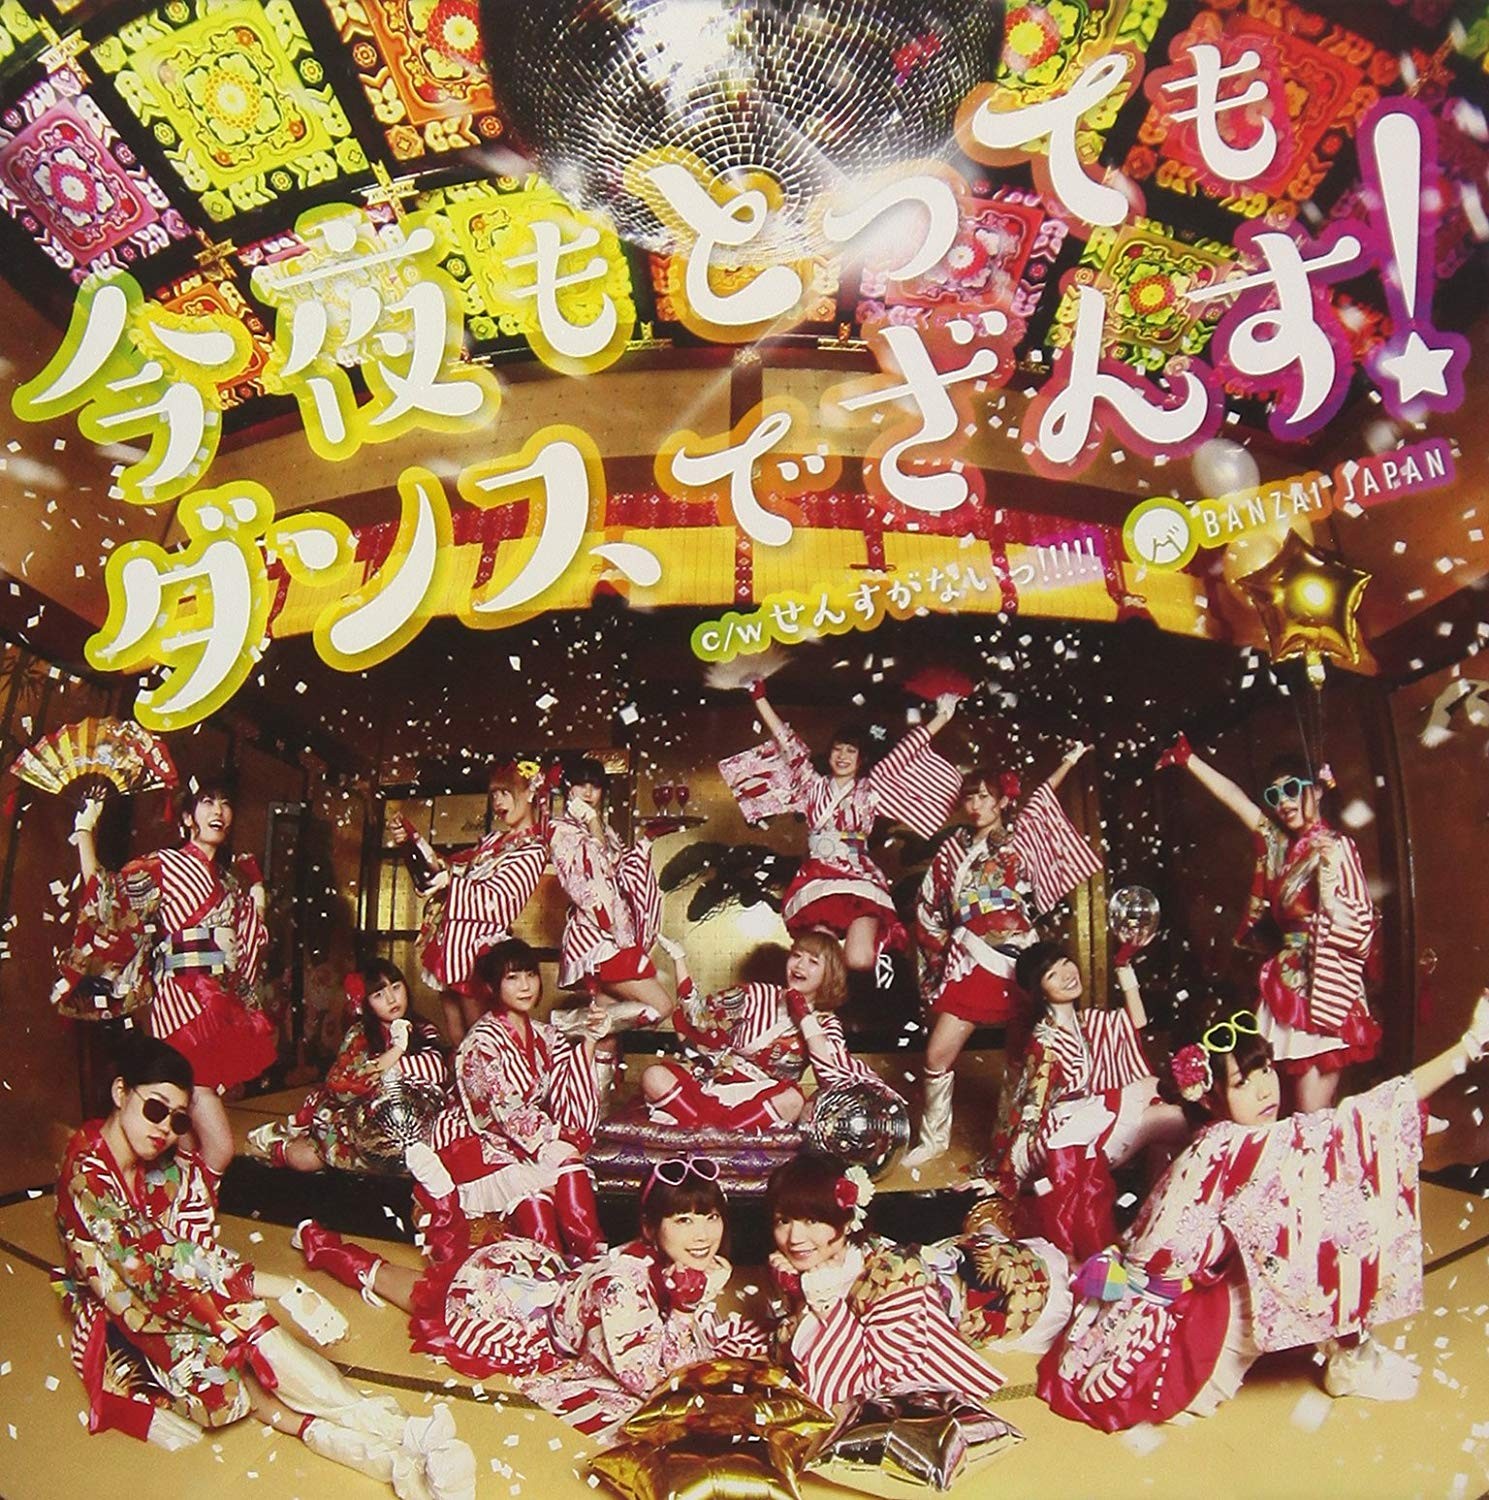 BANZAI JAPAN (バンザイジャパン) –  今夜もとってもダンスでざんす! [FLAC / CD] [2018.07.01]